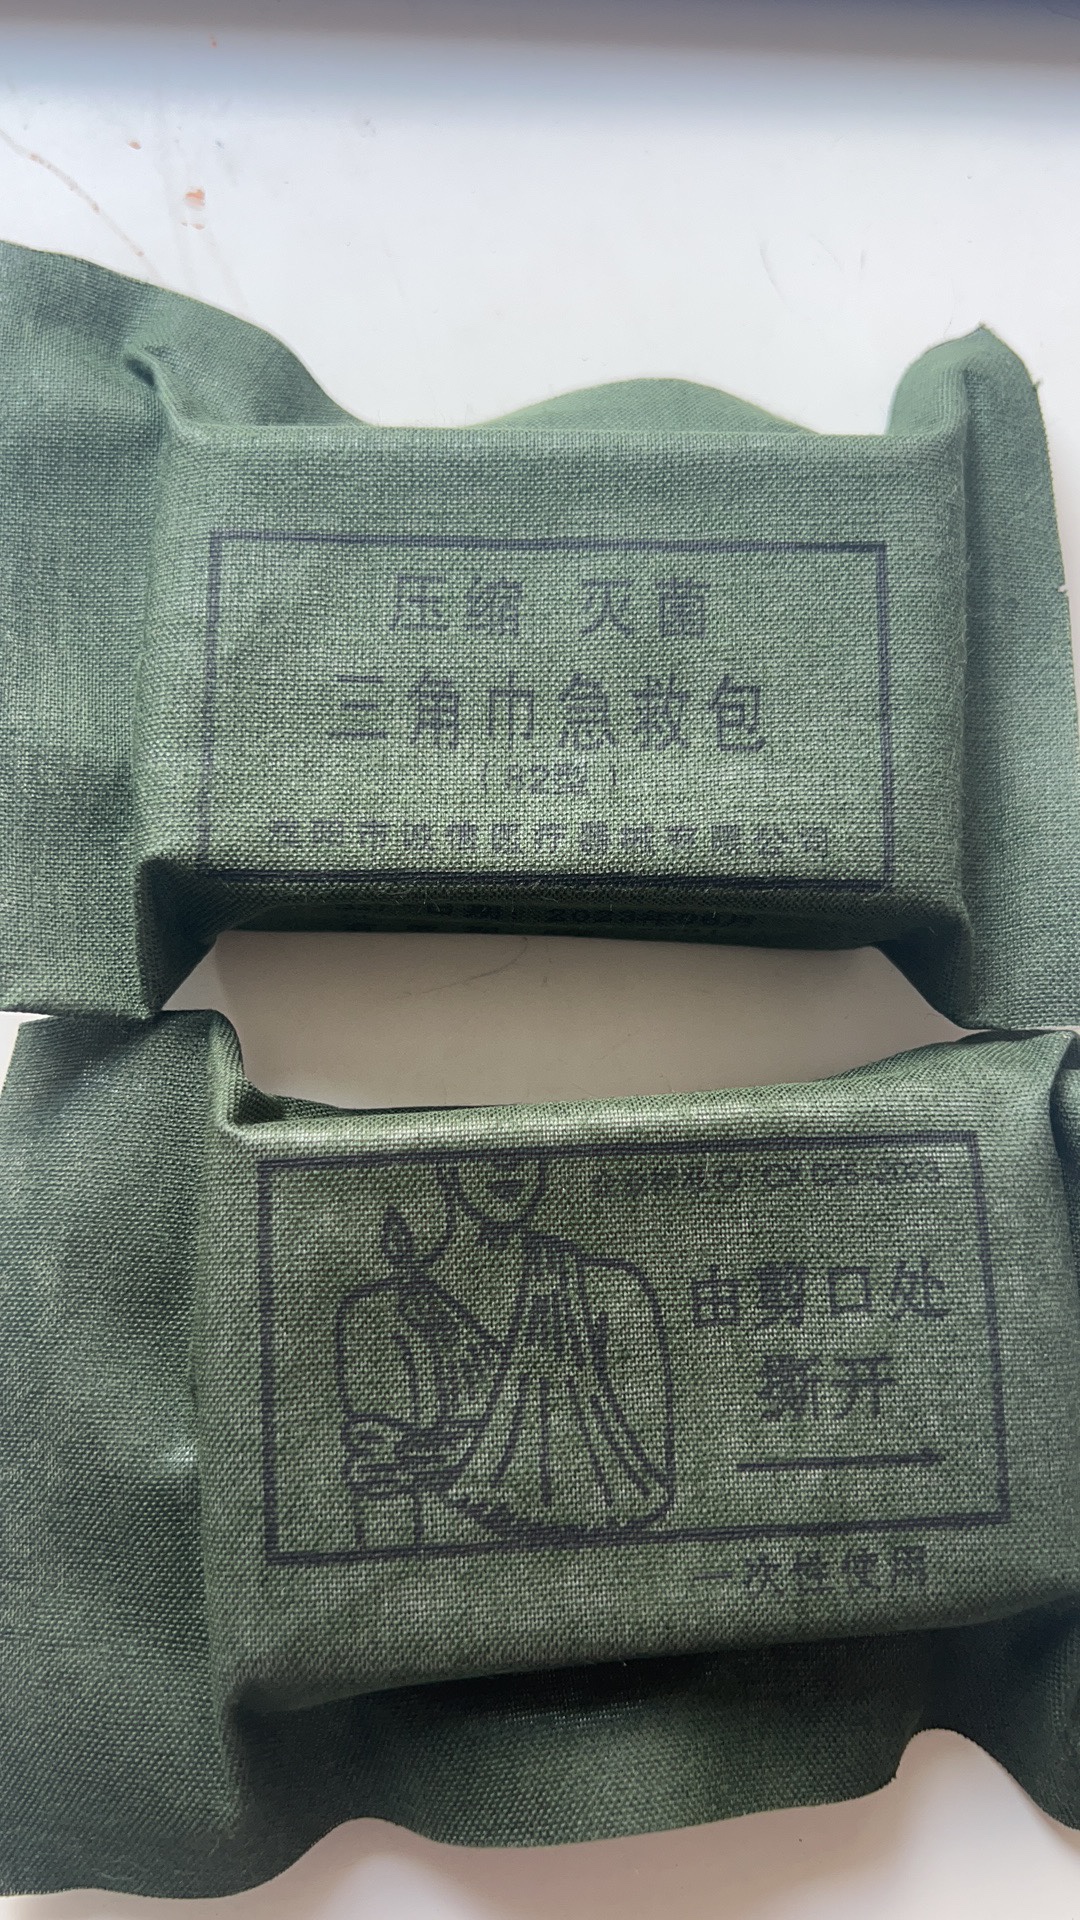 厂家正品特价包邮82型压缩三角巾、三角巾急救包护理培训纱布绷带